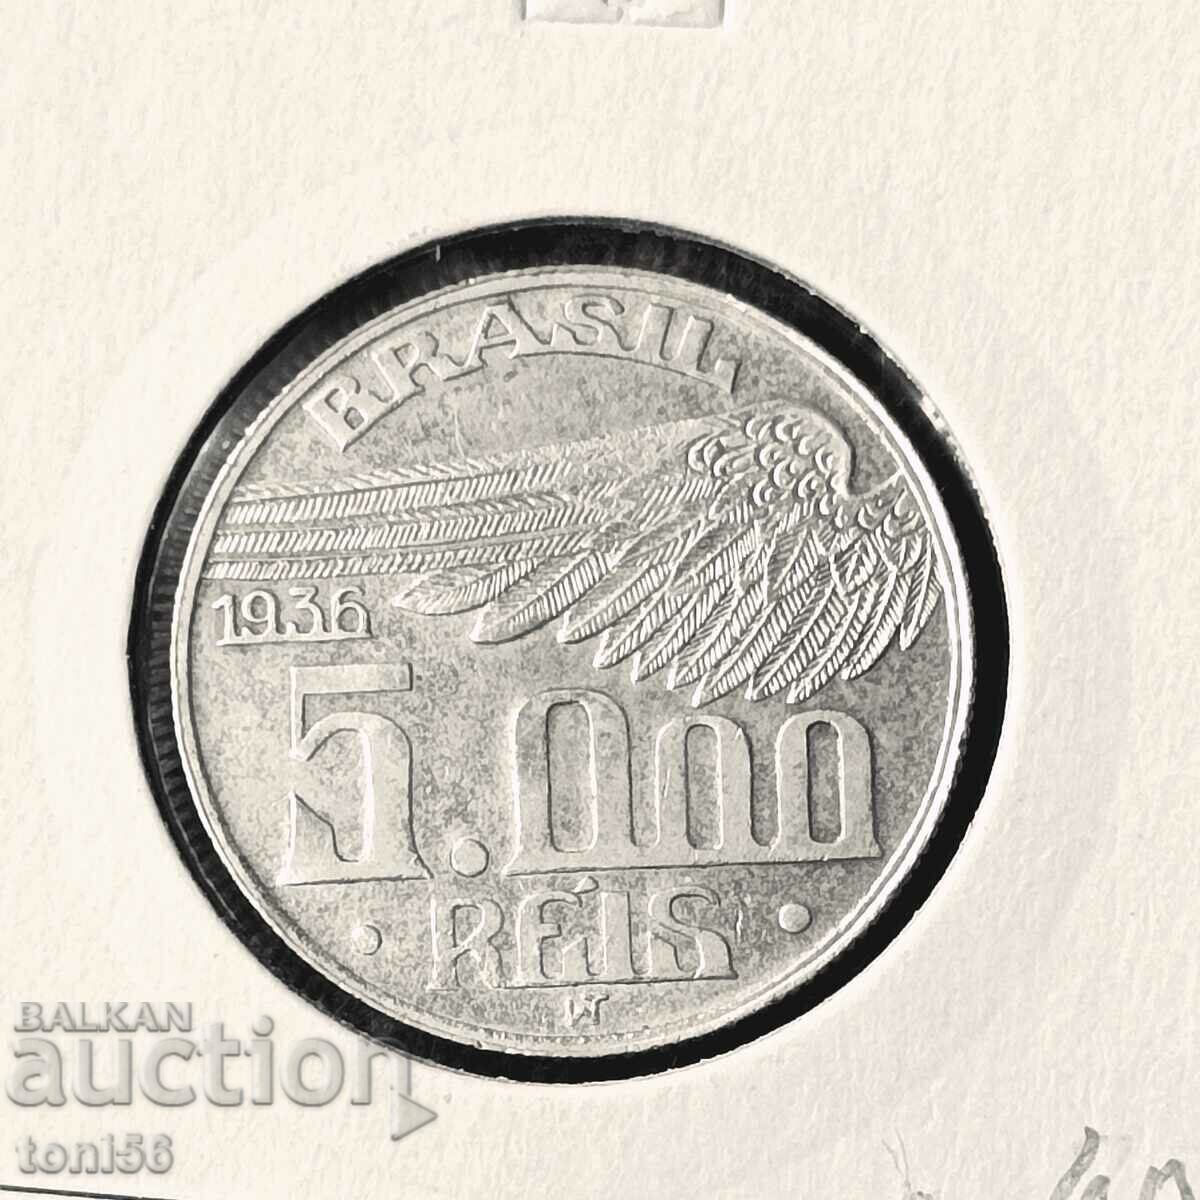 Brazil 5,000 Reis 1936 UNC - Silver